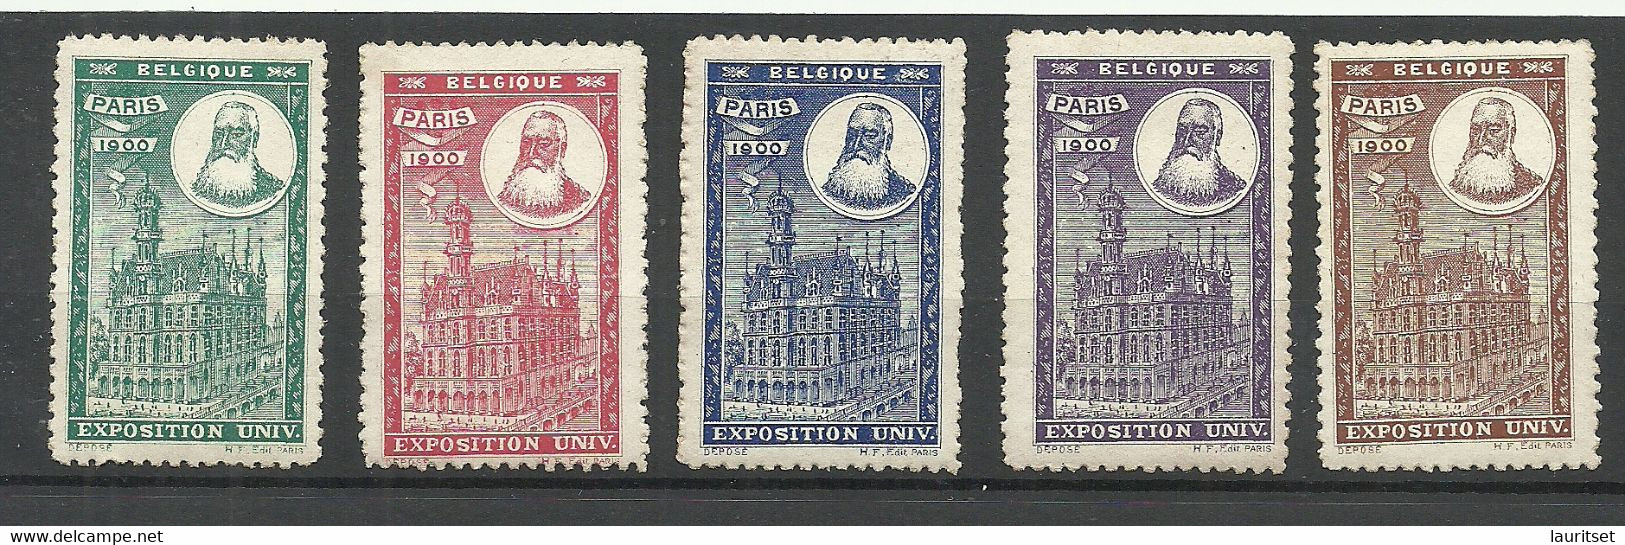 France 1900 EXPOSITION UNIVERSELLE Vignetten Poster Stamps Pavillon De Belgique Belgium * - 1900 – Paris (Frankreich)